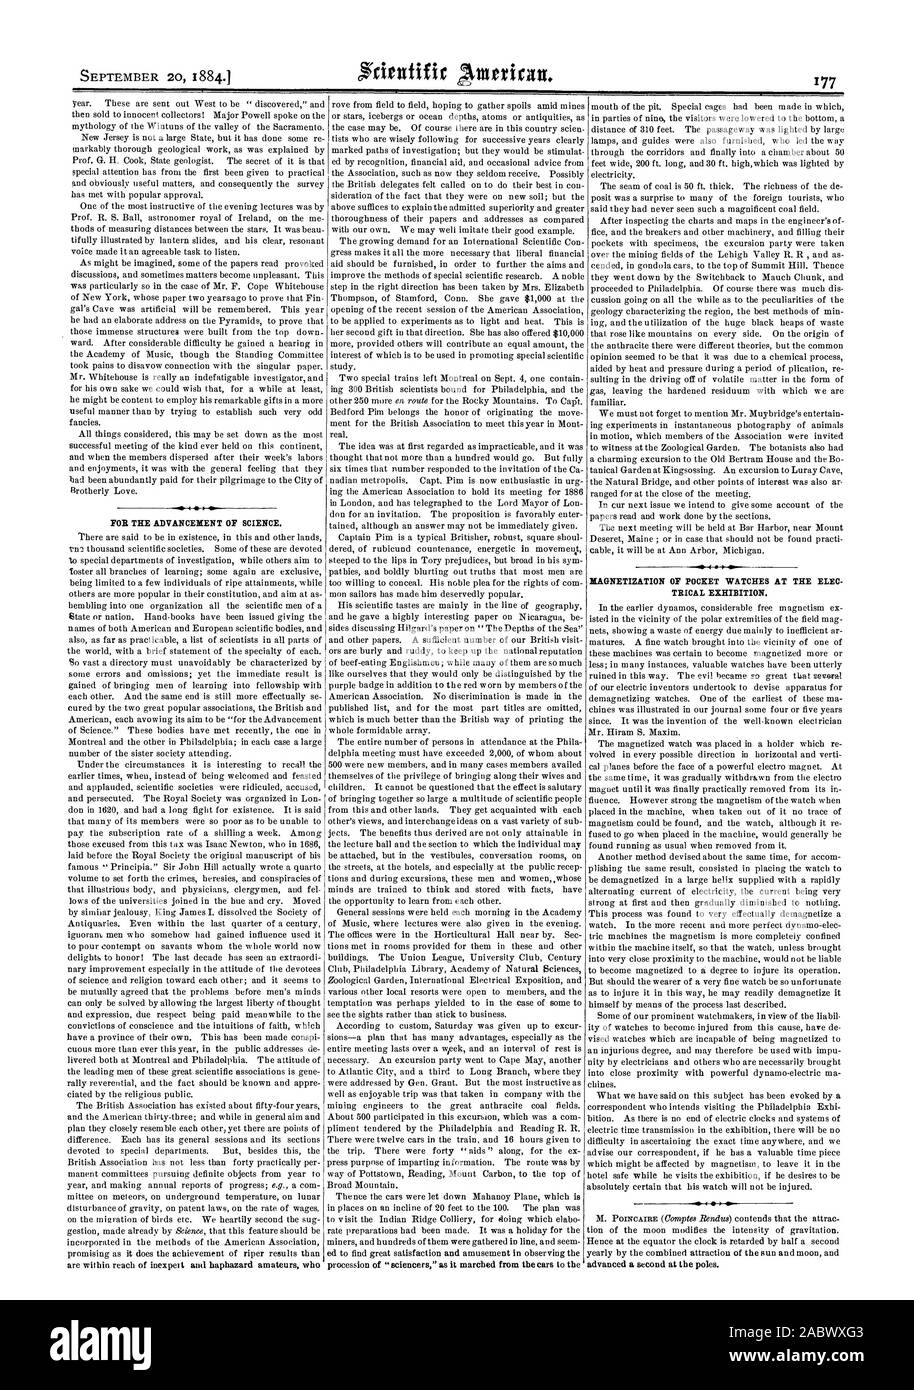 Zur Förderung der Wissenschaft. Magnetisierung von TASCHENUHREN AN DER ELEC ELEKTRISCHEN AUSSTELLUNG., Scientific American, 1884-09-20 Stockfoto